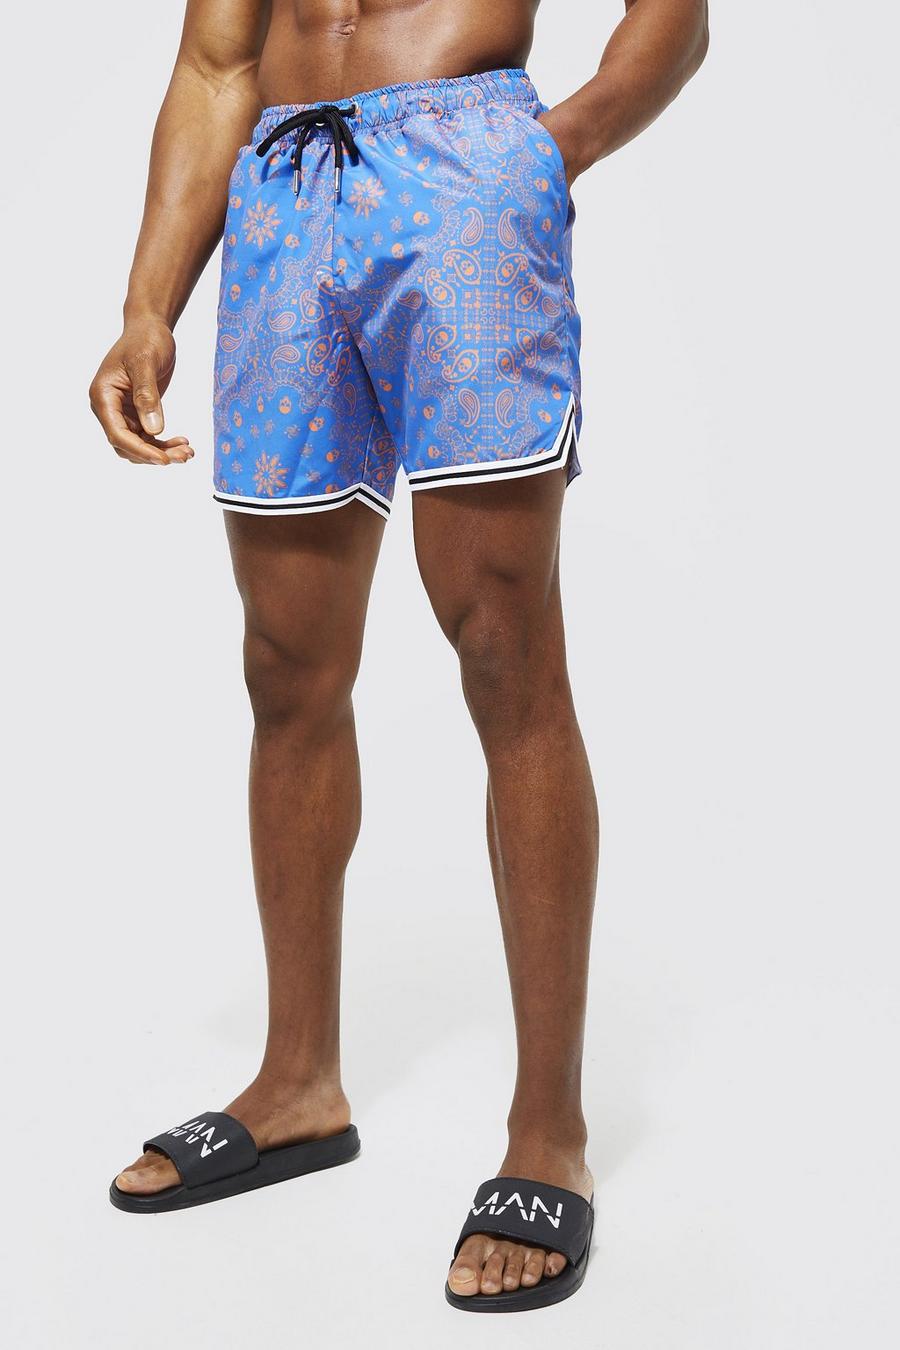 קובלט blue בגד ים שורט בסגנון כדורסל באורך בינוני עם הדפס בנדנה